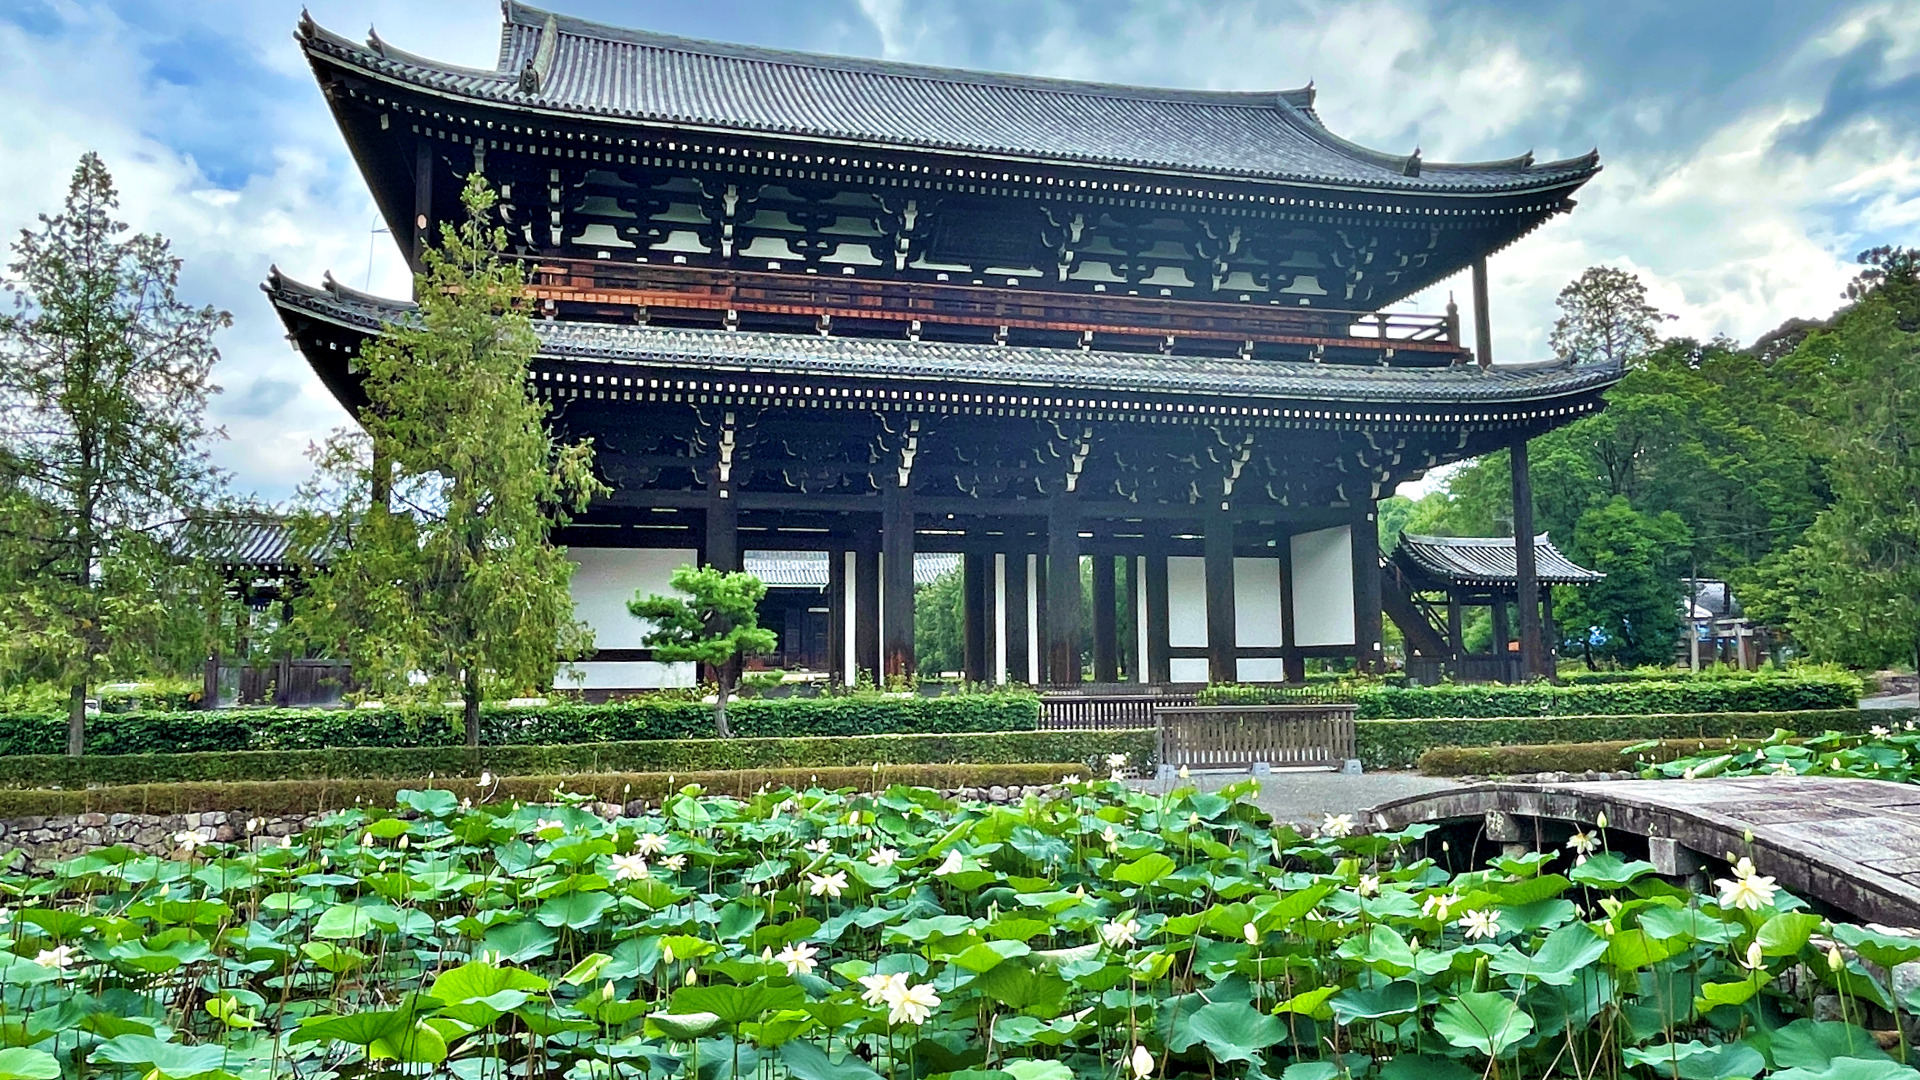 Tofukuji lotus pond